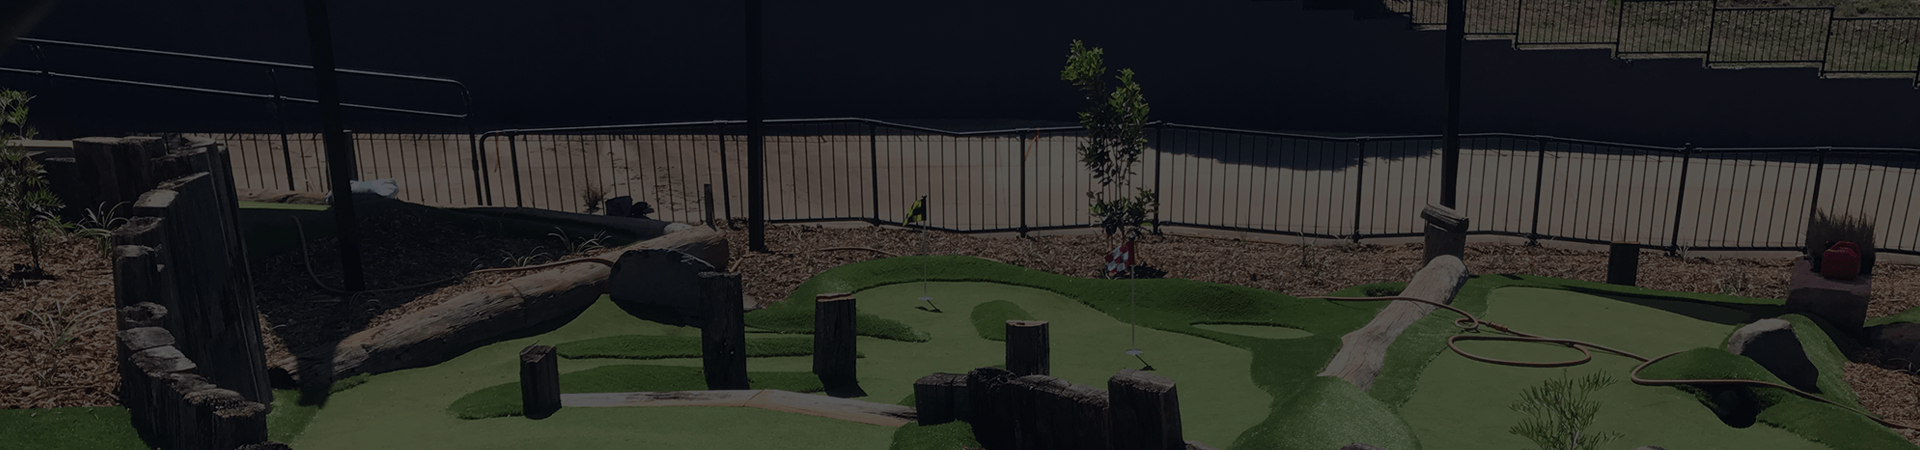 Mini-Golf Swan Valley  Perth Mini-Golf Course - The Vines Golf Course